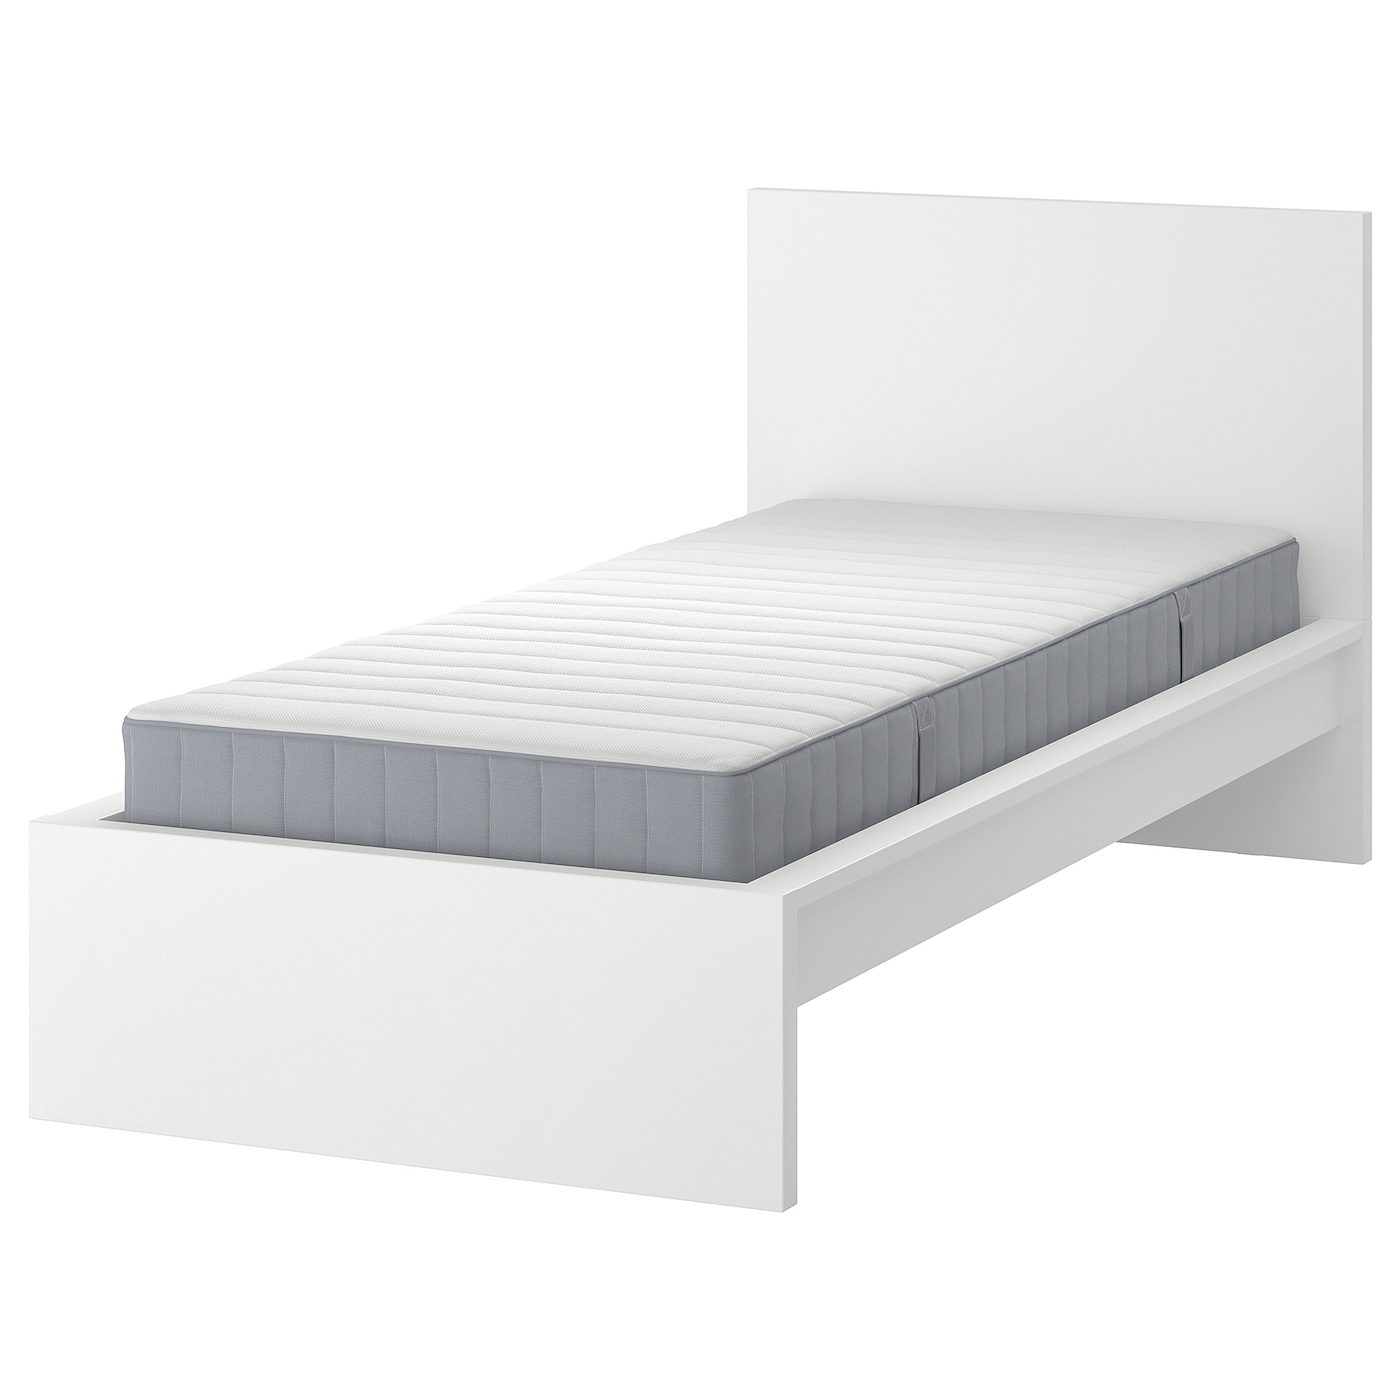 Кровать - IKEA MALM, 200х120 см, матрас средне-жесткий, белый, МАЛЬМ ИКЕА